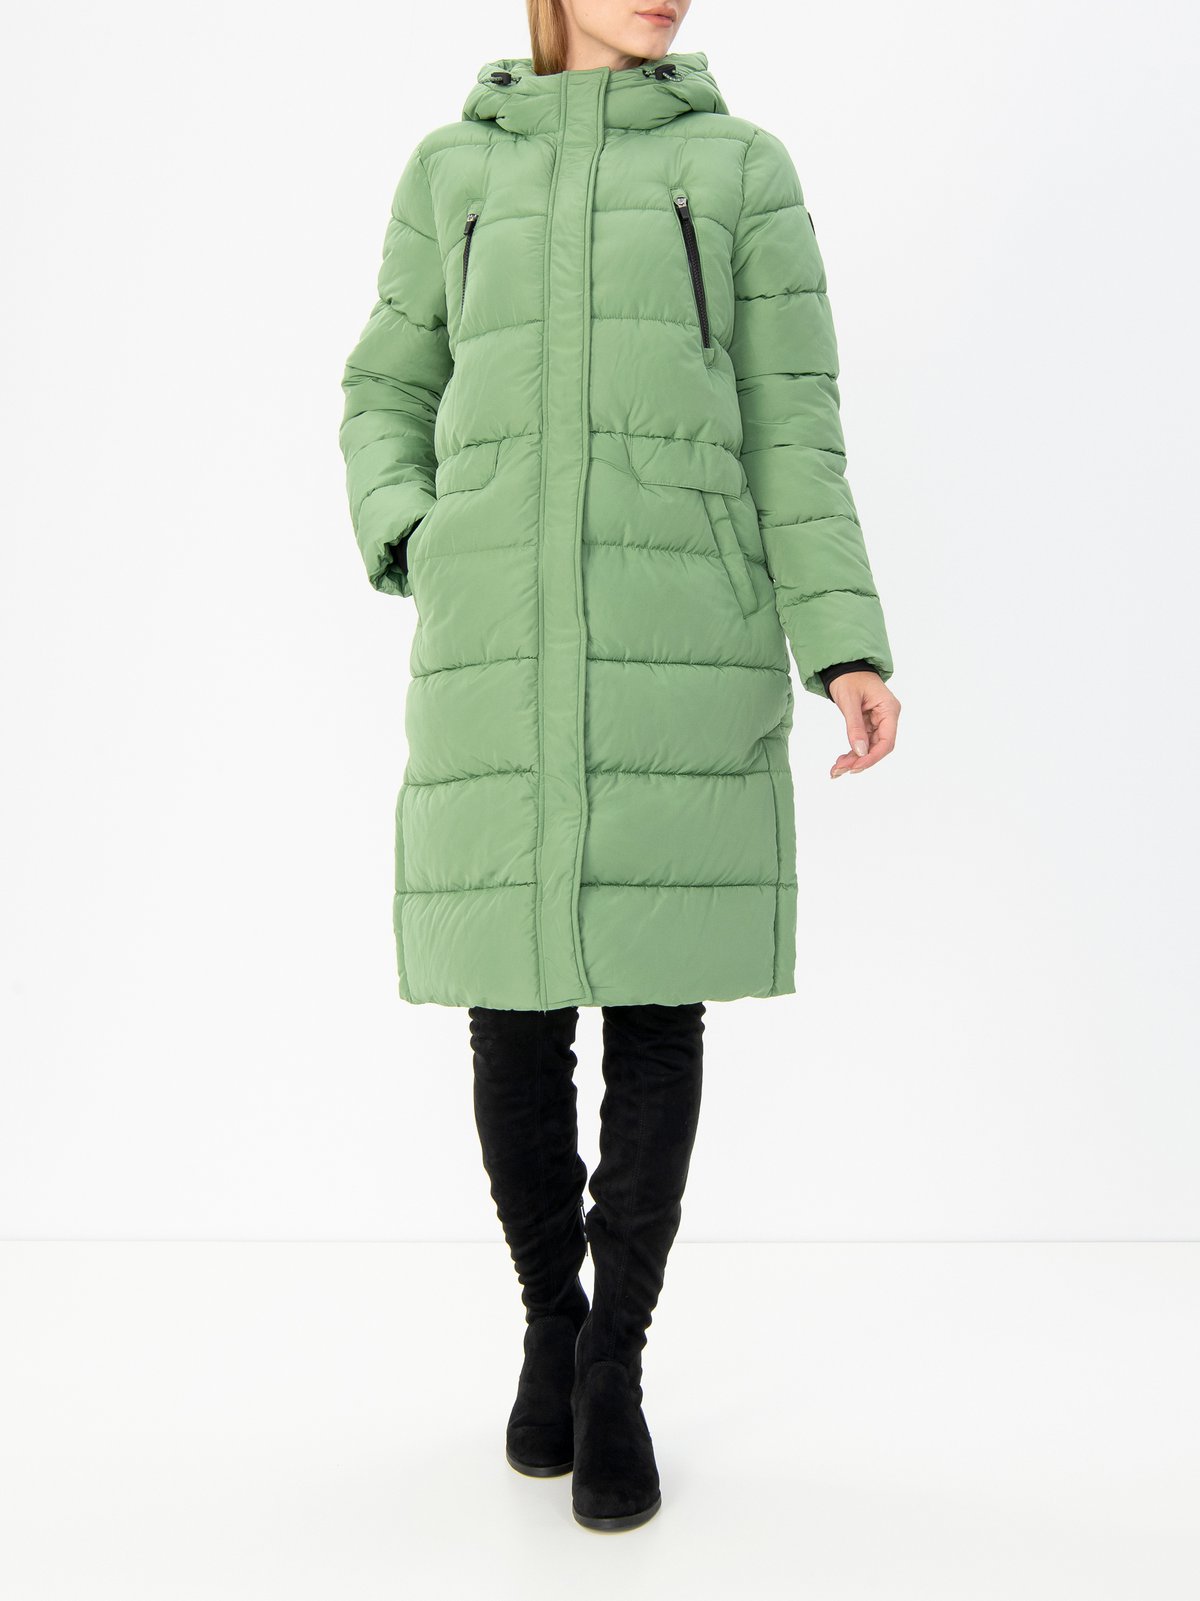 Women's coat green Tom Tailor Denim